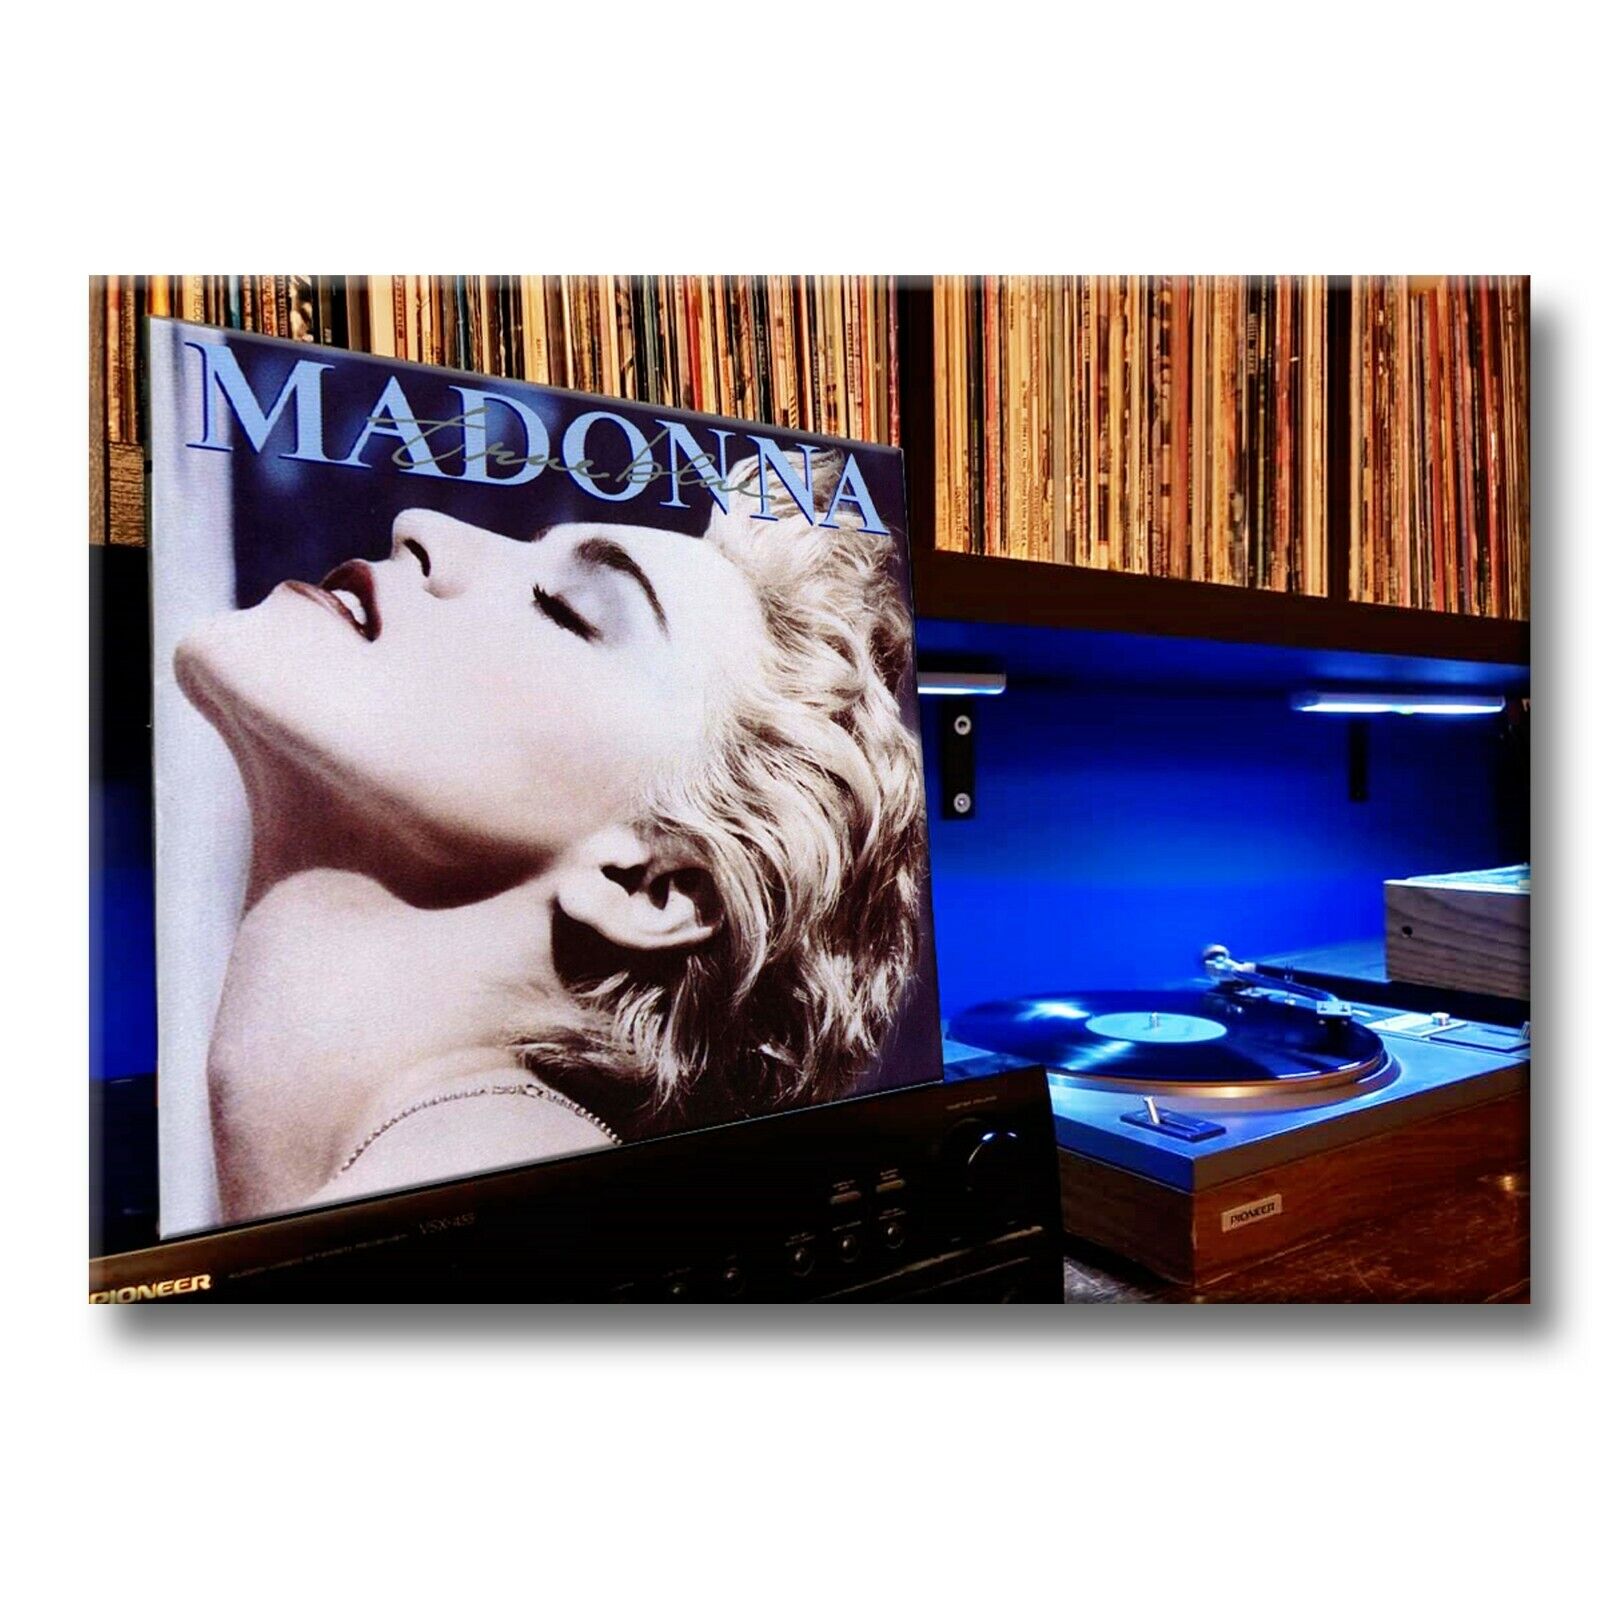 MADONNA True Blue Classic Album 3.5 inches x 2.5 inches FRIDGE MAGNET